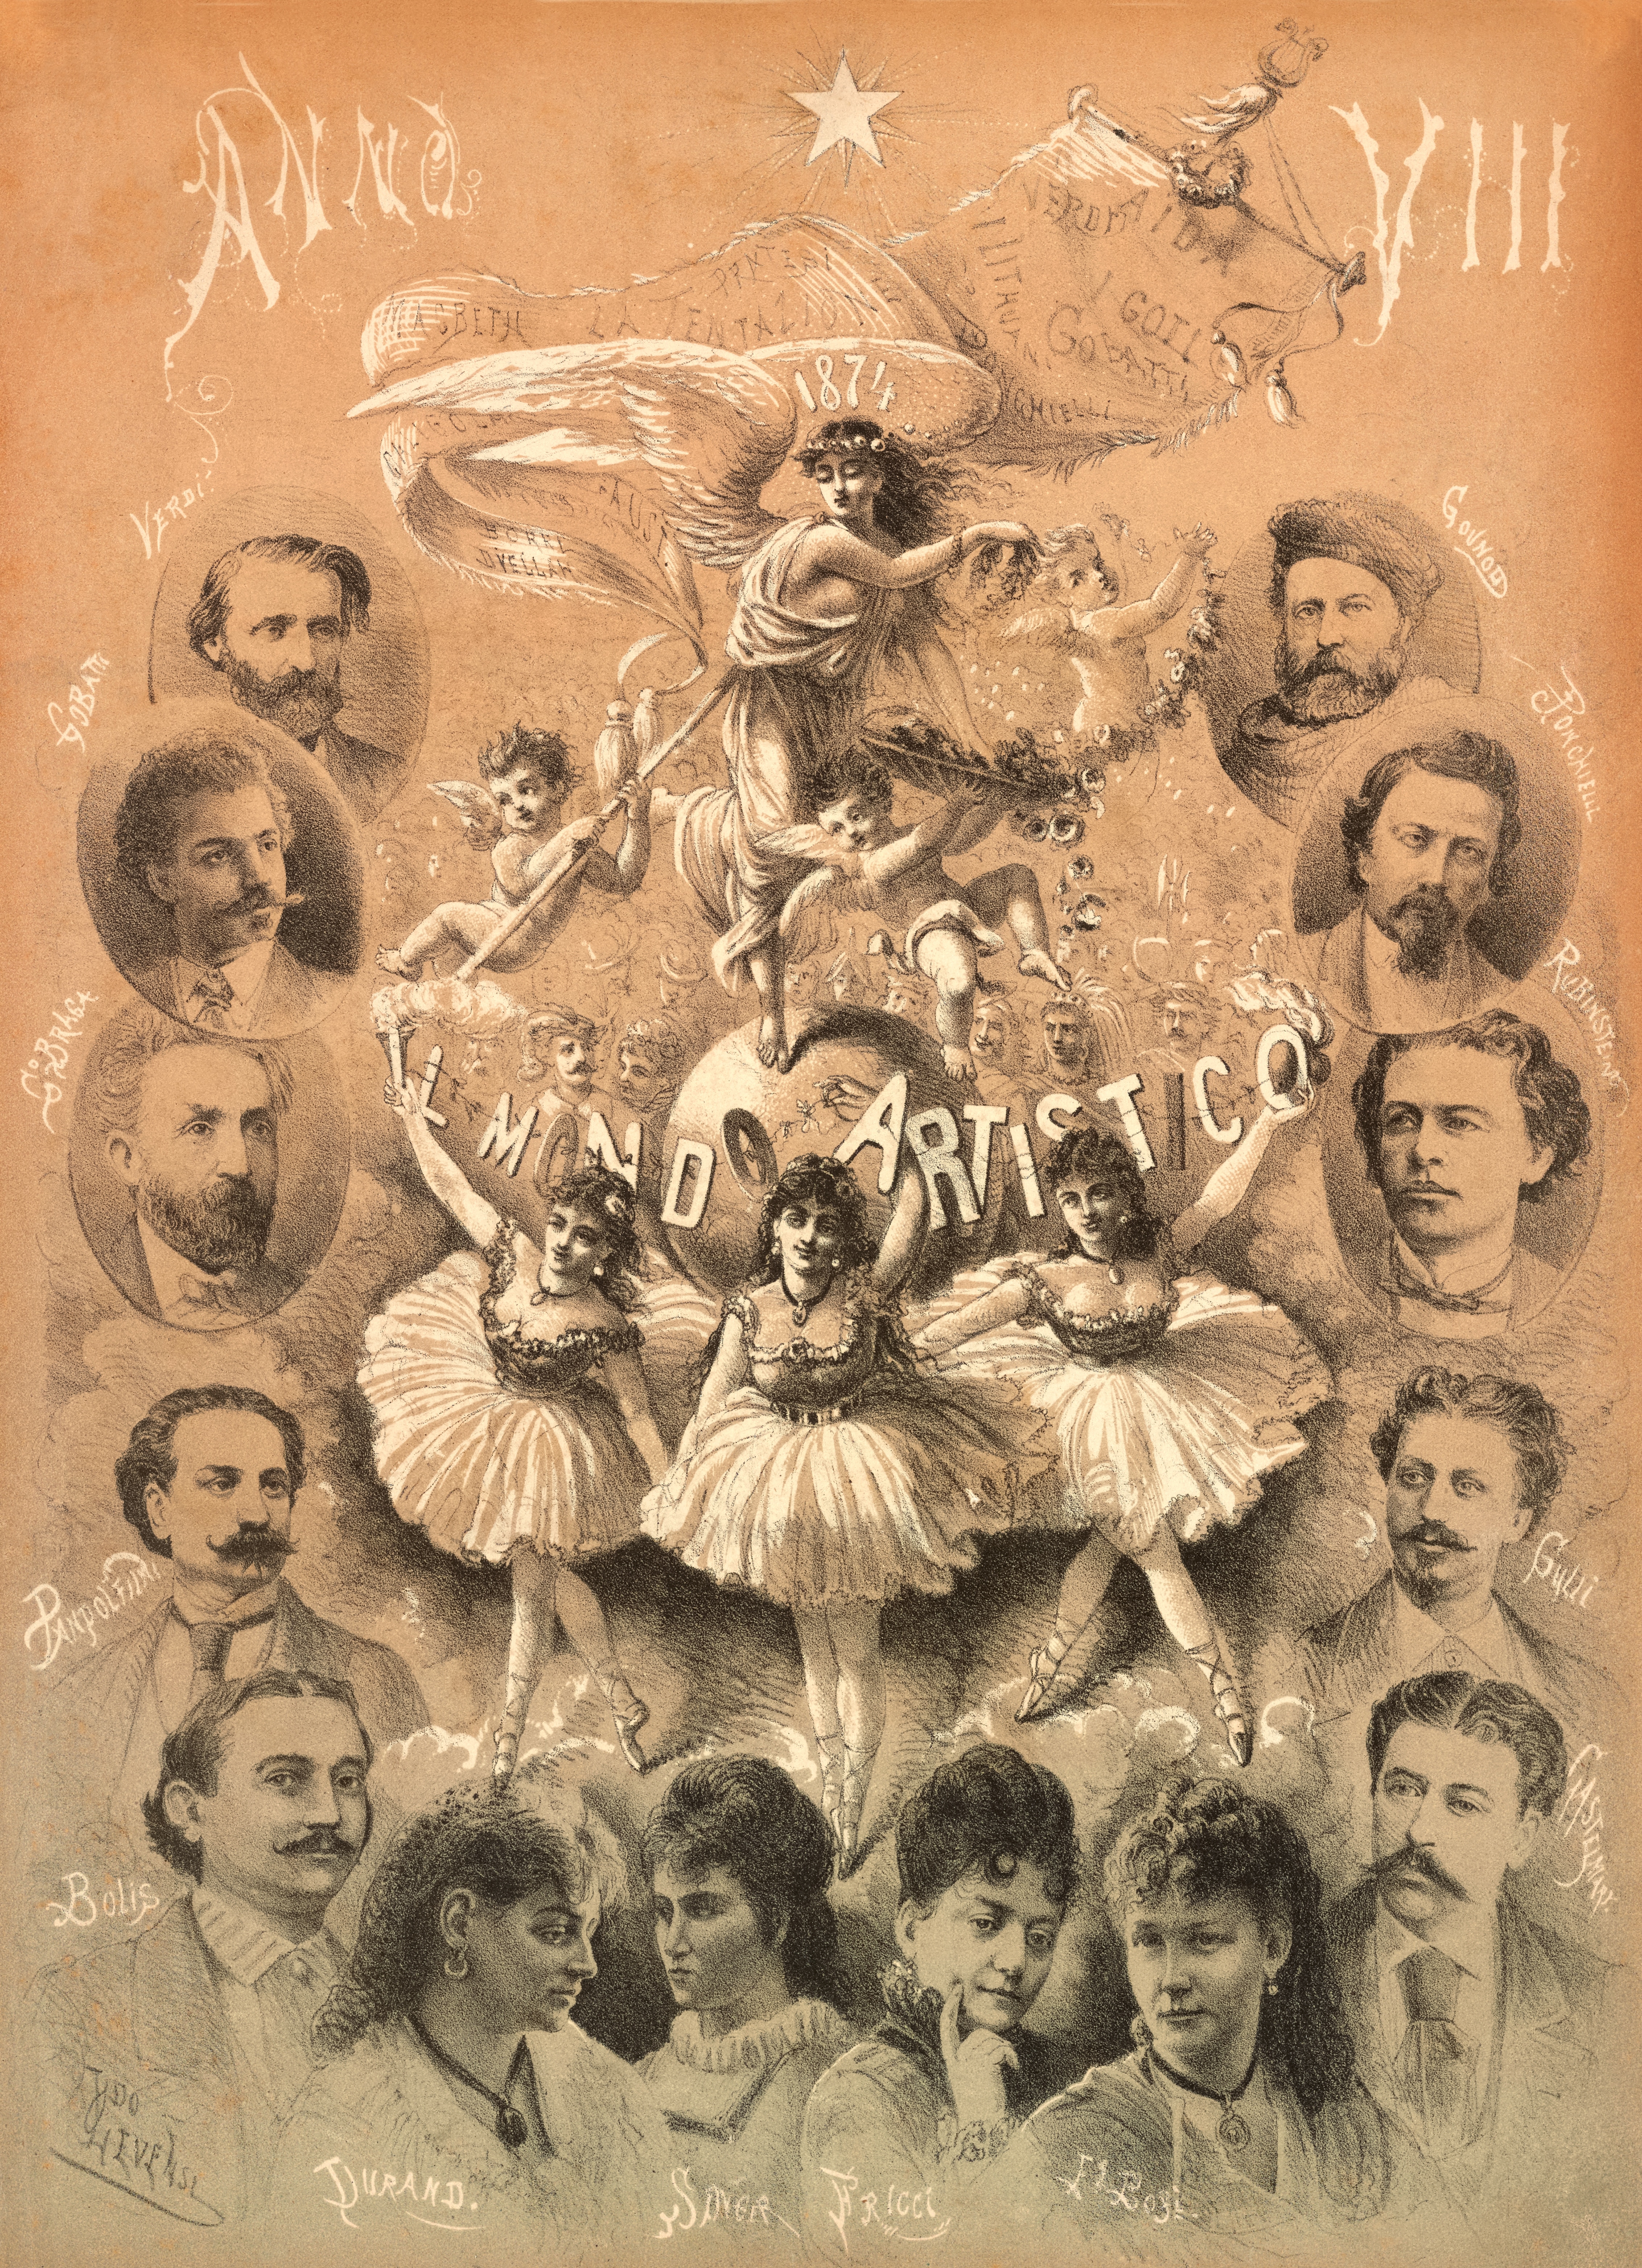 Un numero del periodico illustrato milanese “Il mondo artistico”. In copertina, tra gli altri, Giuseppe Verdi e il baritono Francesco Pandolfini, interprete di Amonasro nella prima scaligera di “Aida”.